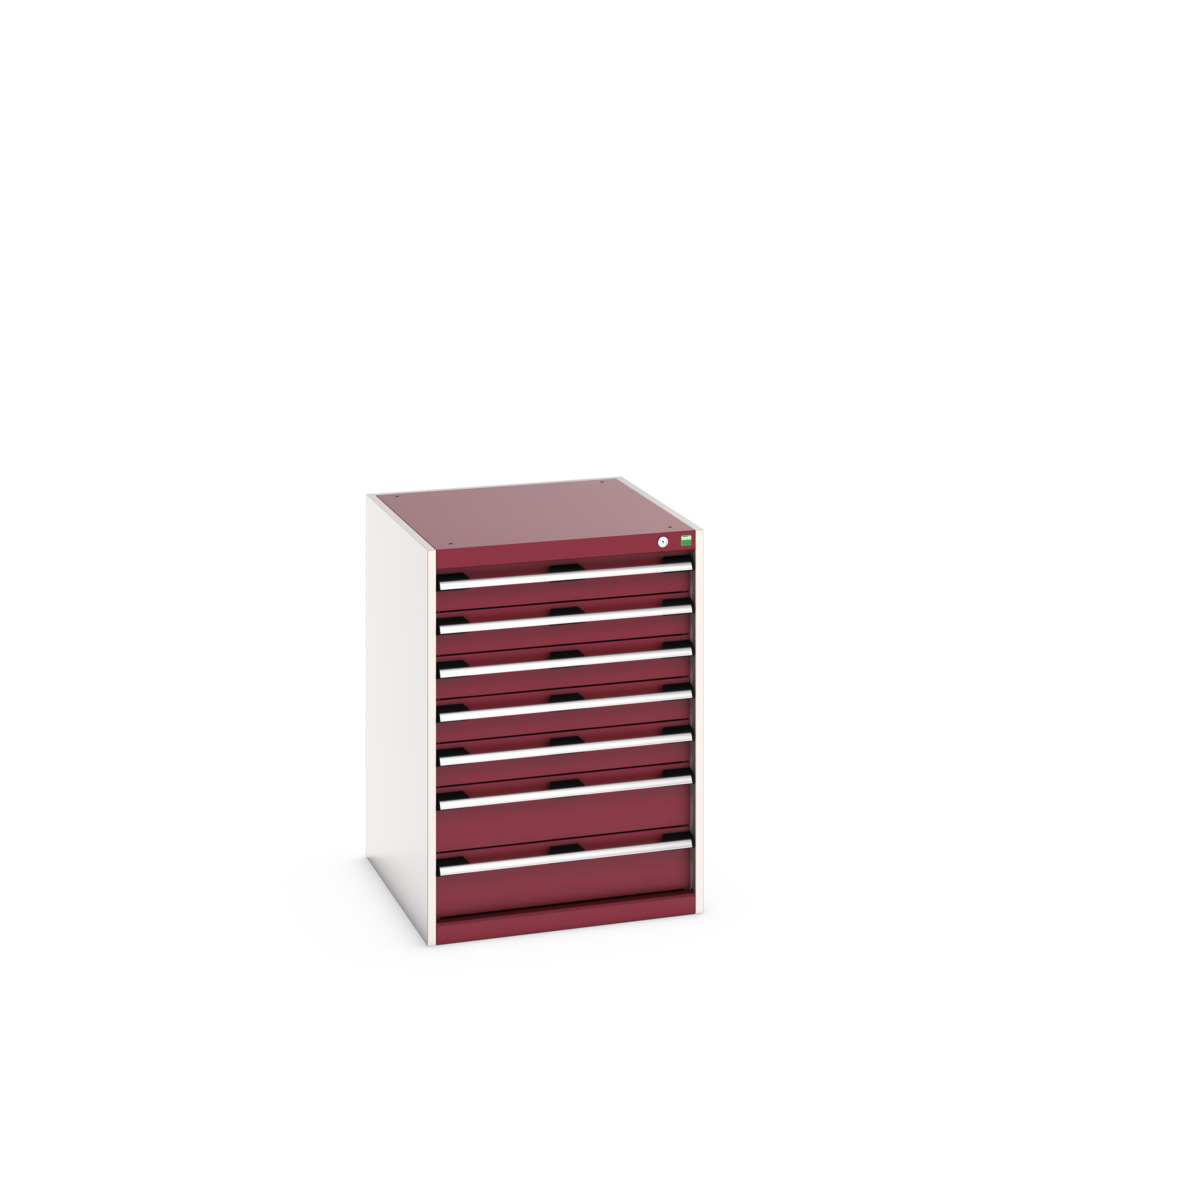 40027090.24V - cubio drawer cabinet